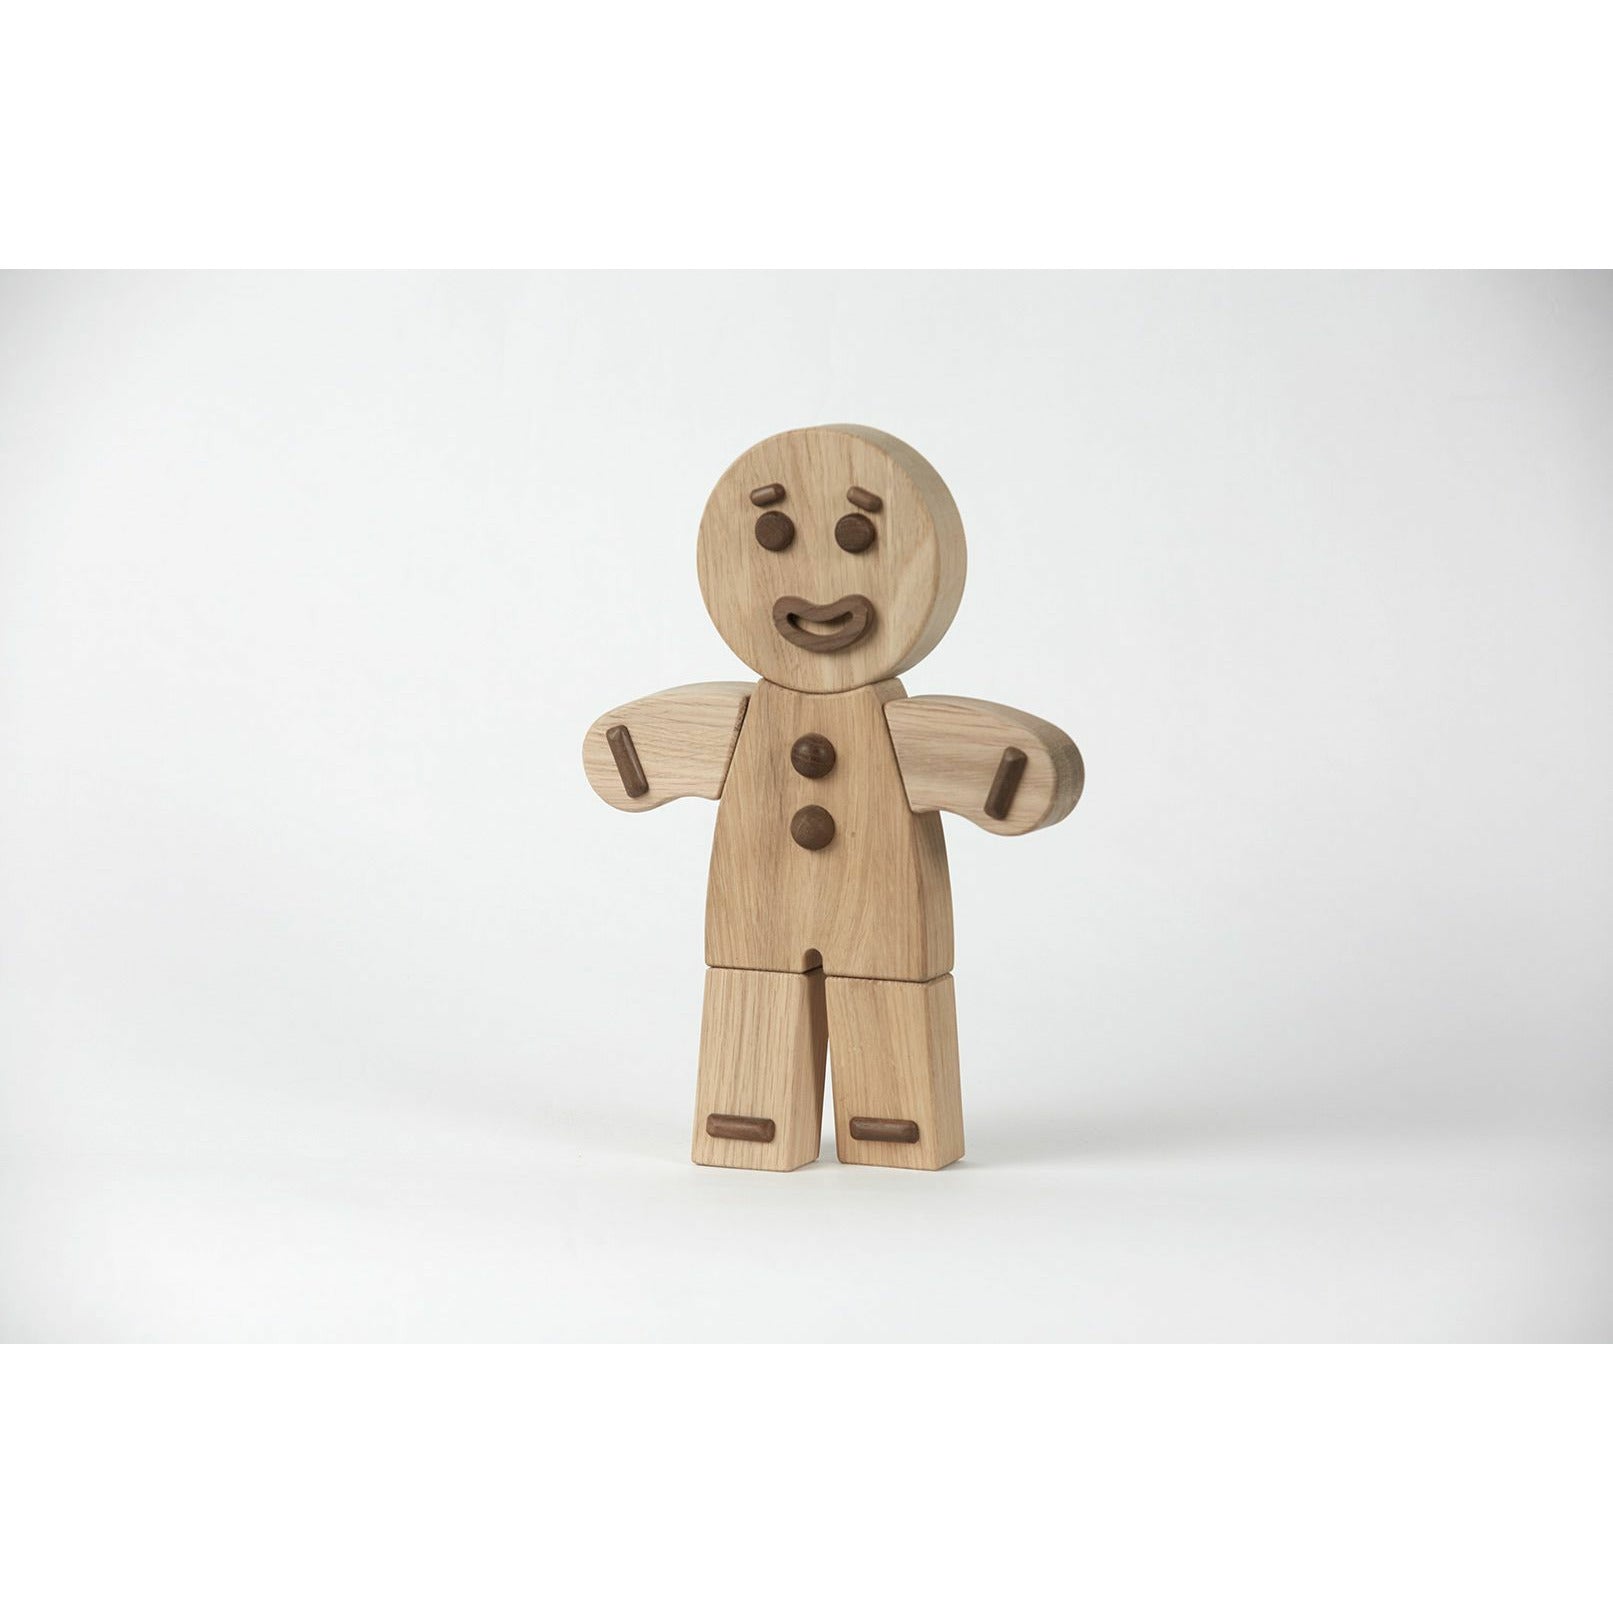 Boyhood Gingerbread mand træfigur, eg, stor